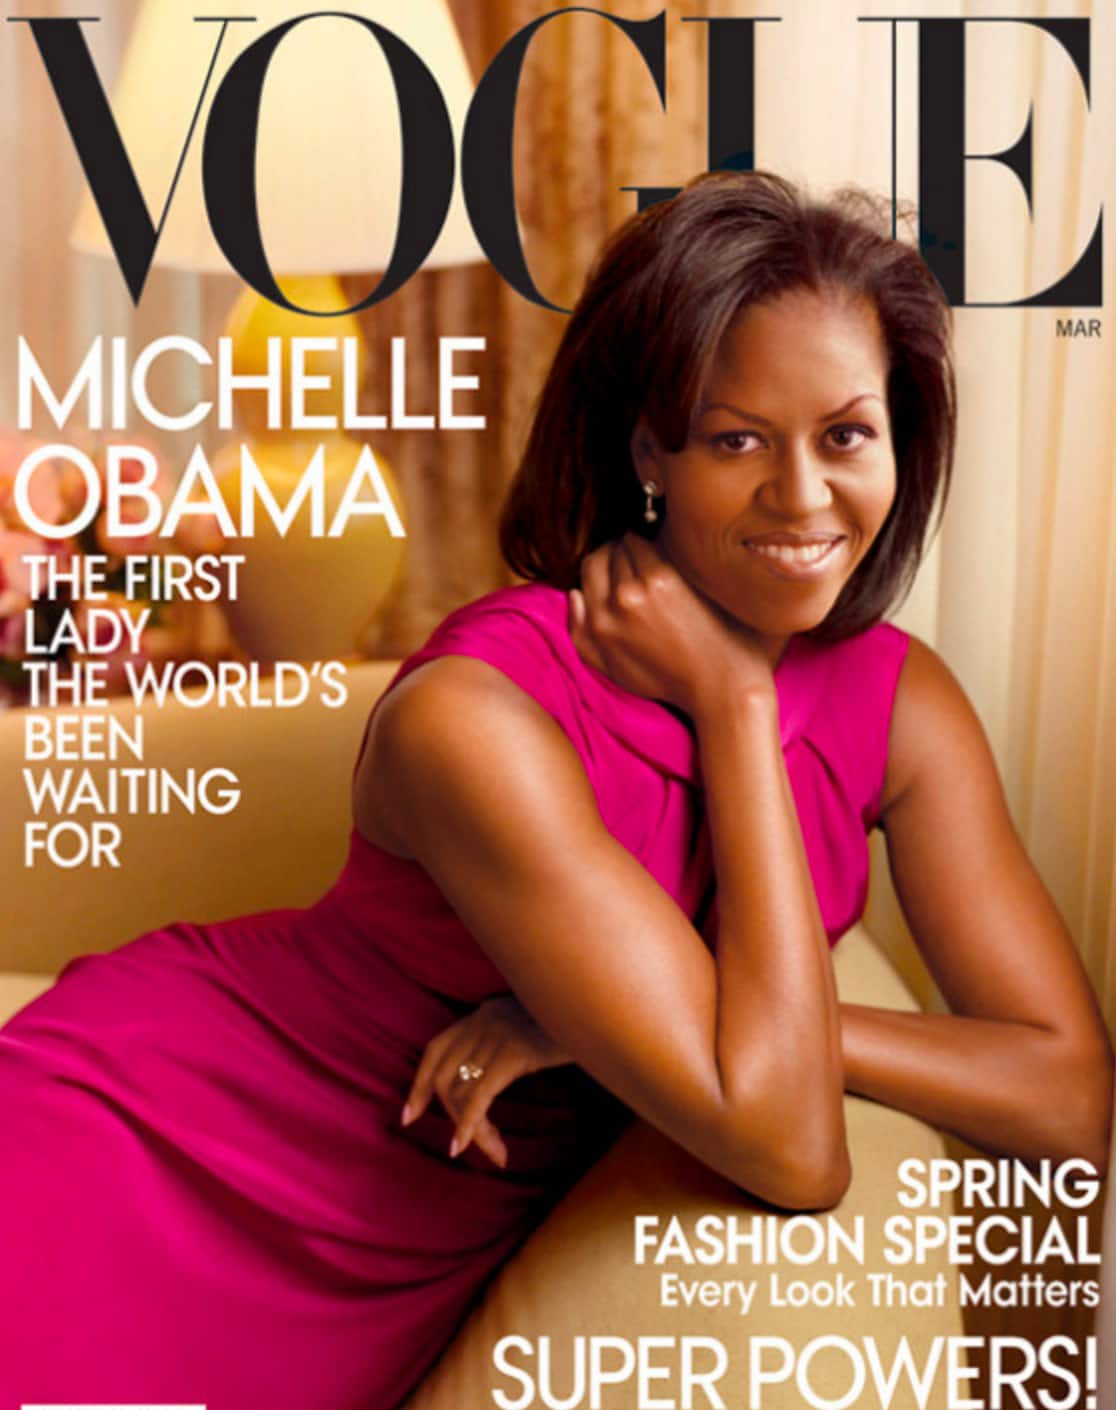 Michelle Obama vogue cover